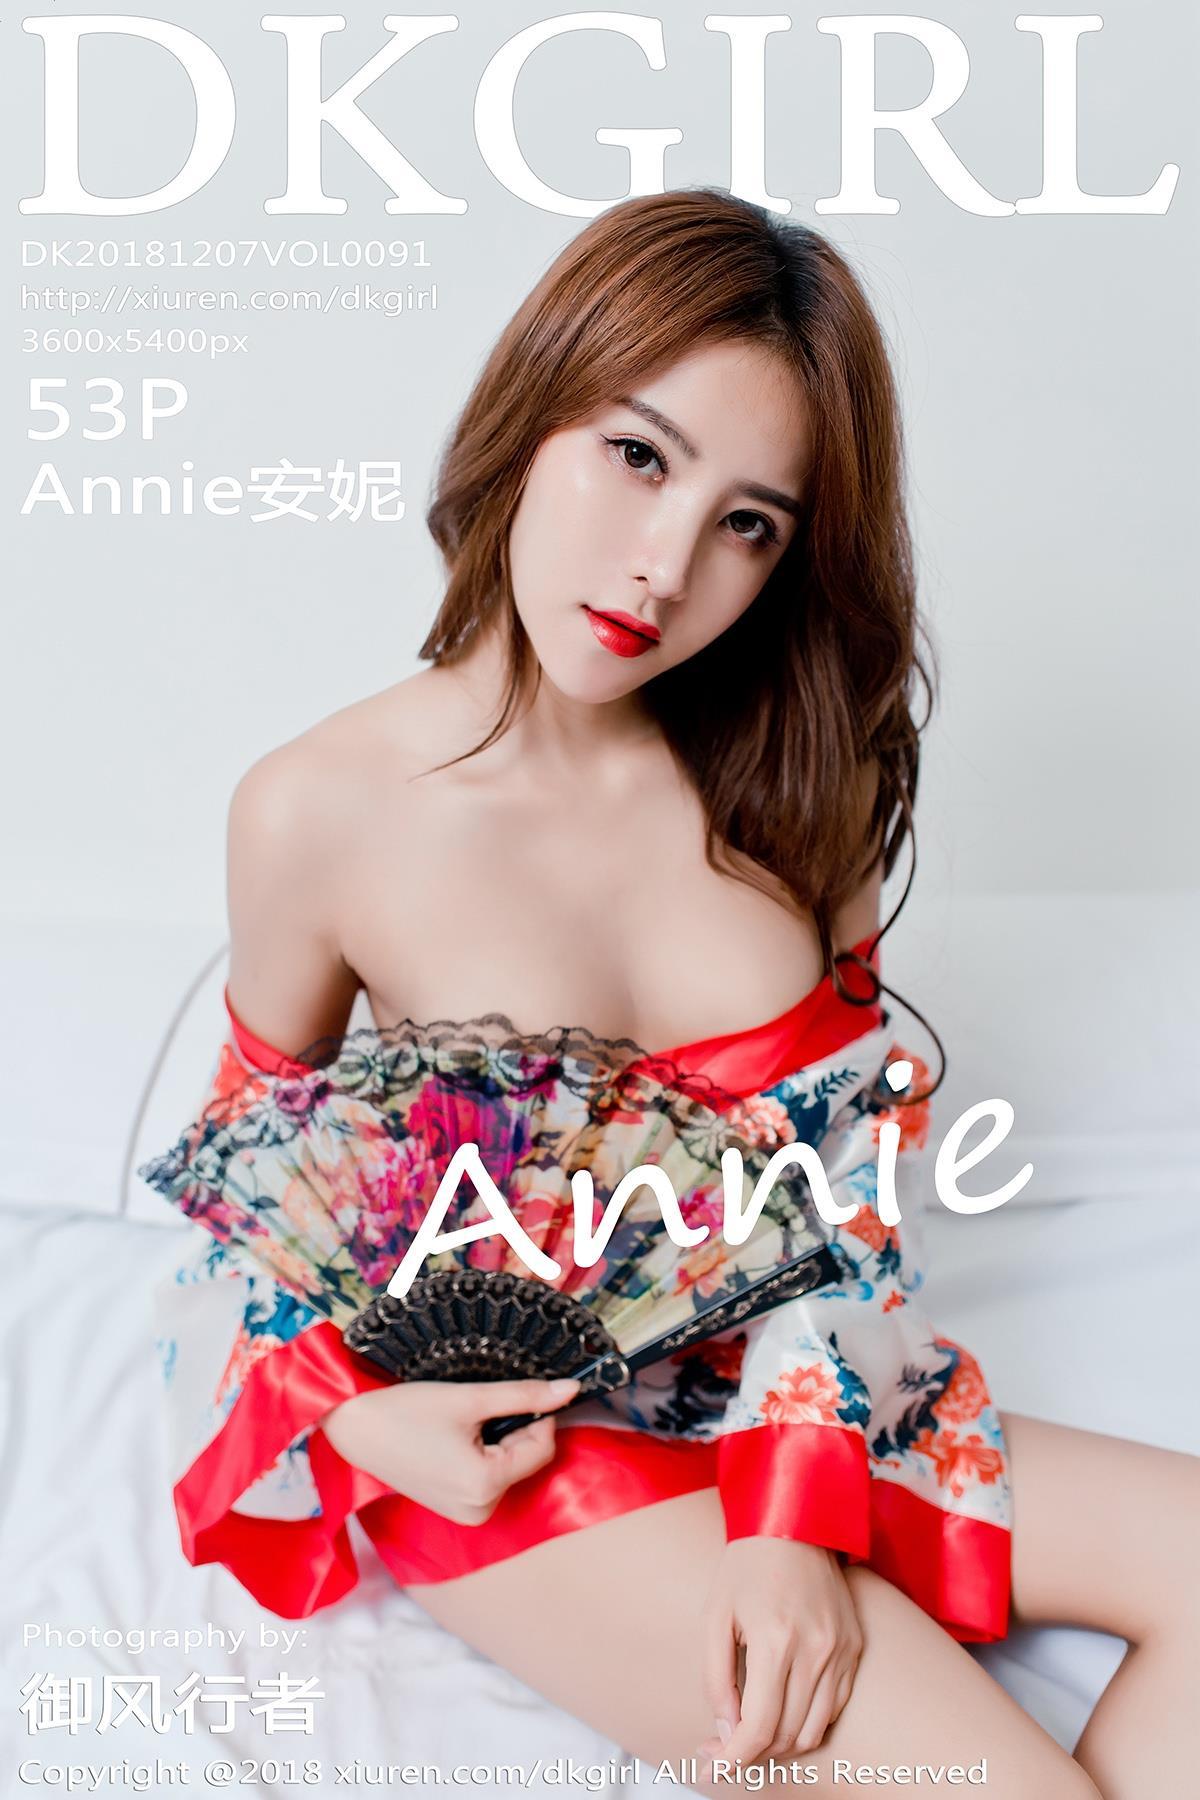 [DKGirl御女郎]DK20181207VOL0091 Annie安妮 黑色塑身内衣与红色情趣和服性感私房写真集,